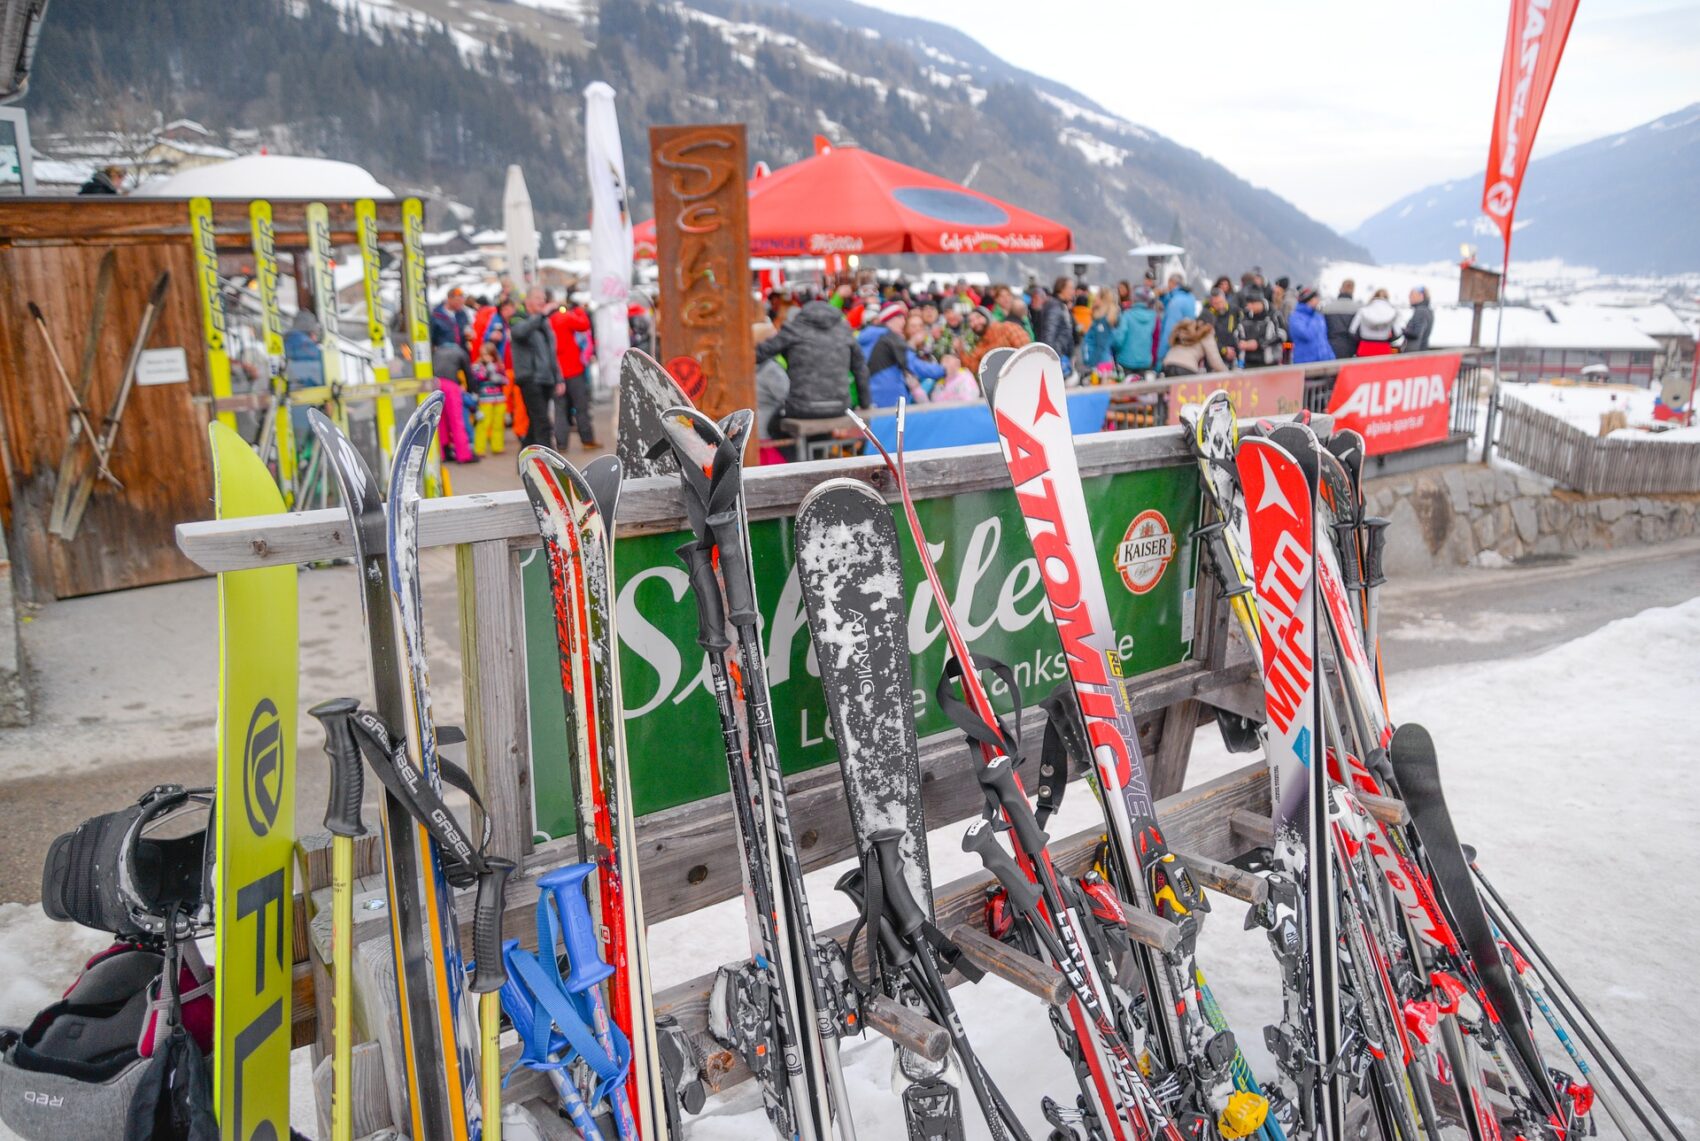 5 lyžařských středisek vhodných pro zábavu s partou přátel: Apres Ski bary jsou místem odpočinku a zábavy s přáteli